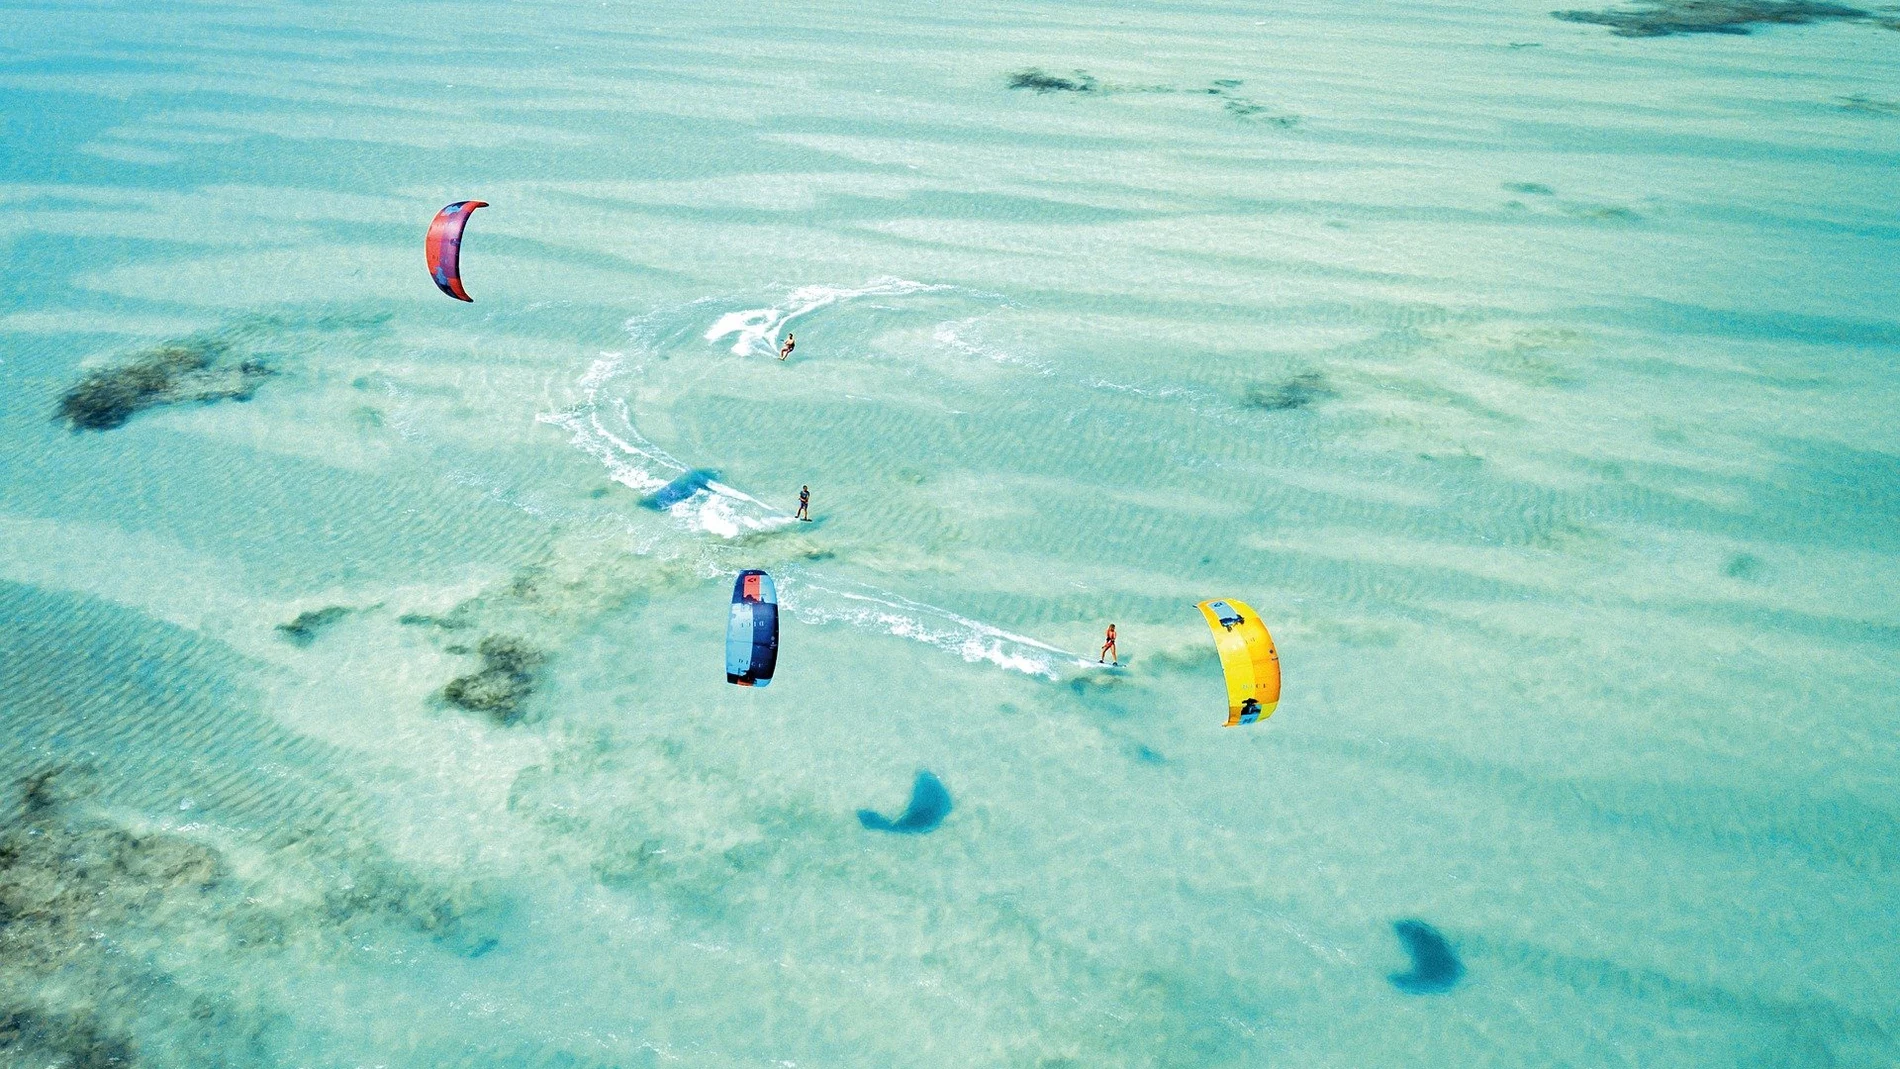 Entre las actividades ofrecidas en Zanzíbar entra este espectacular escenario de kitesurf.